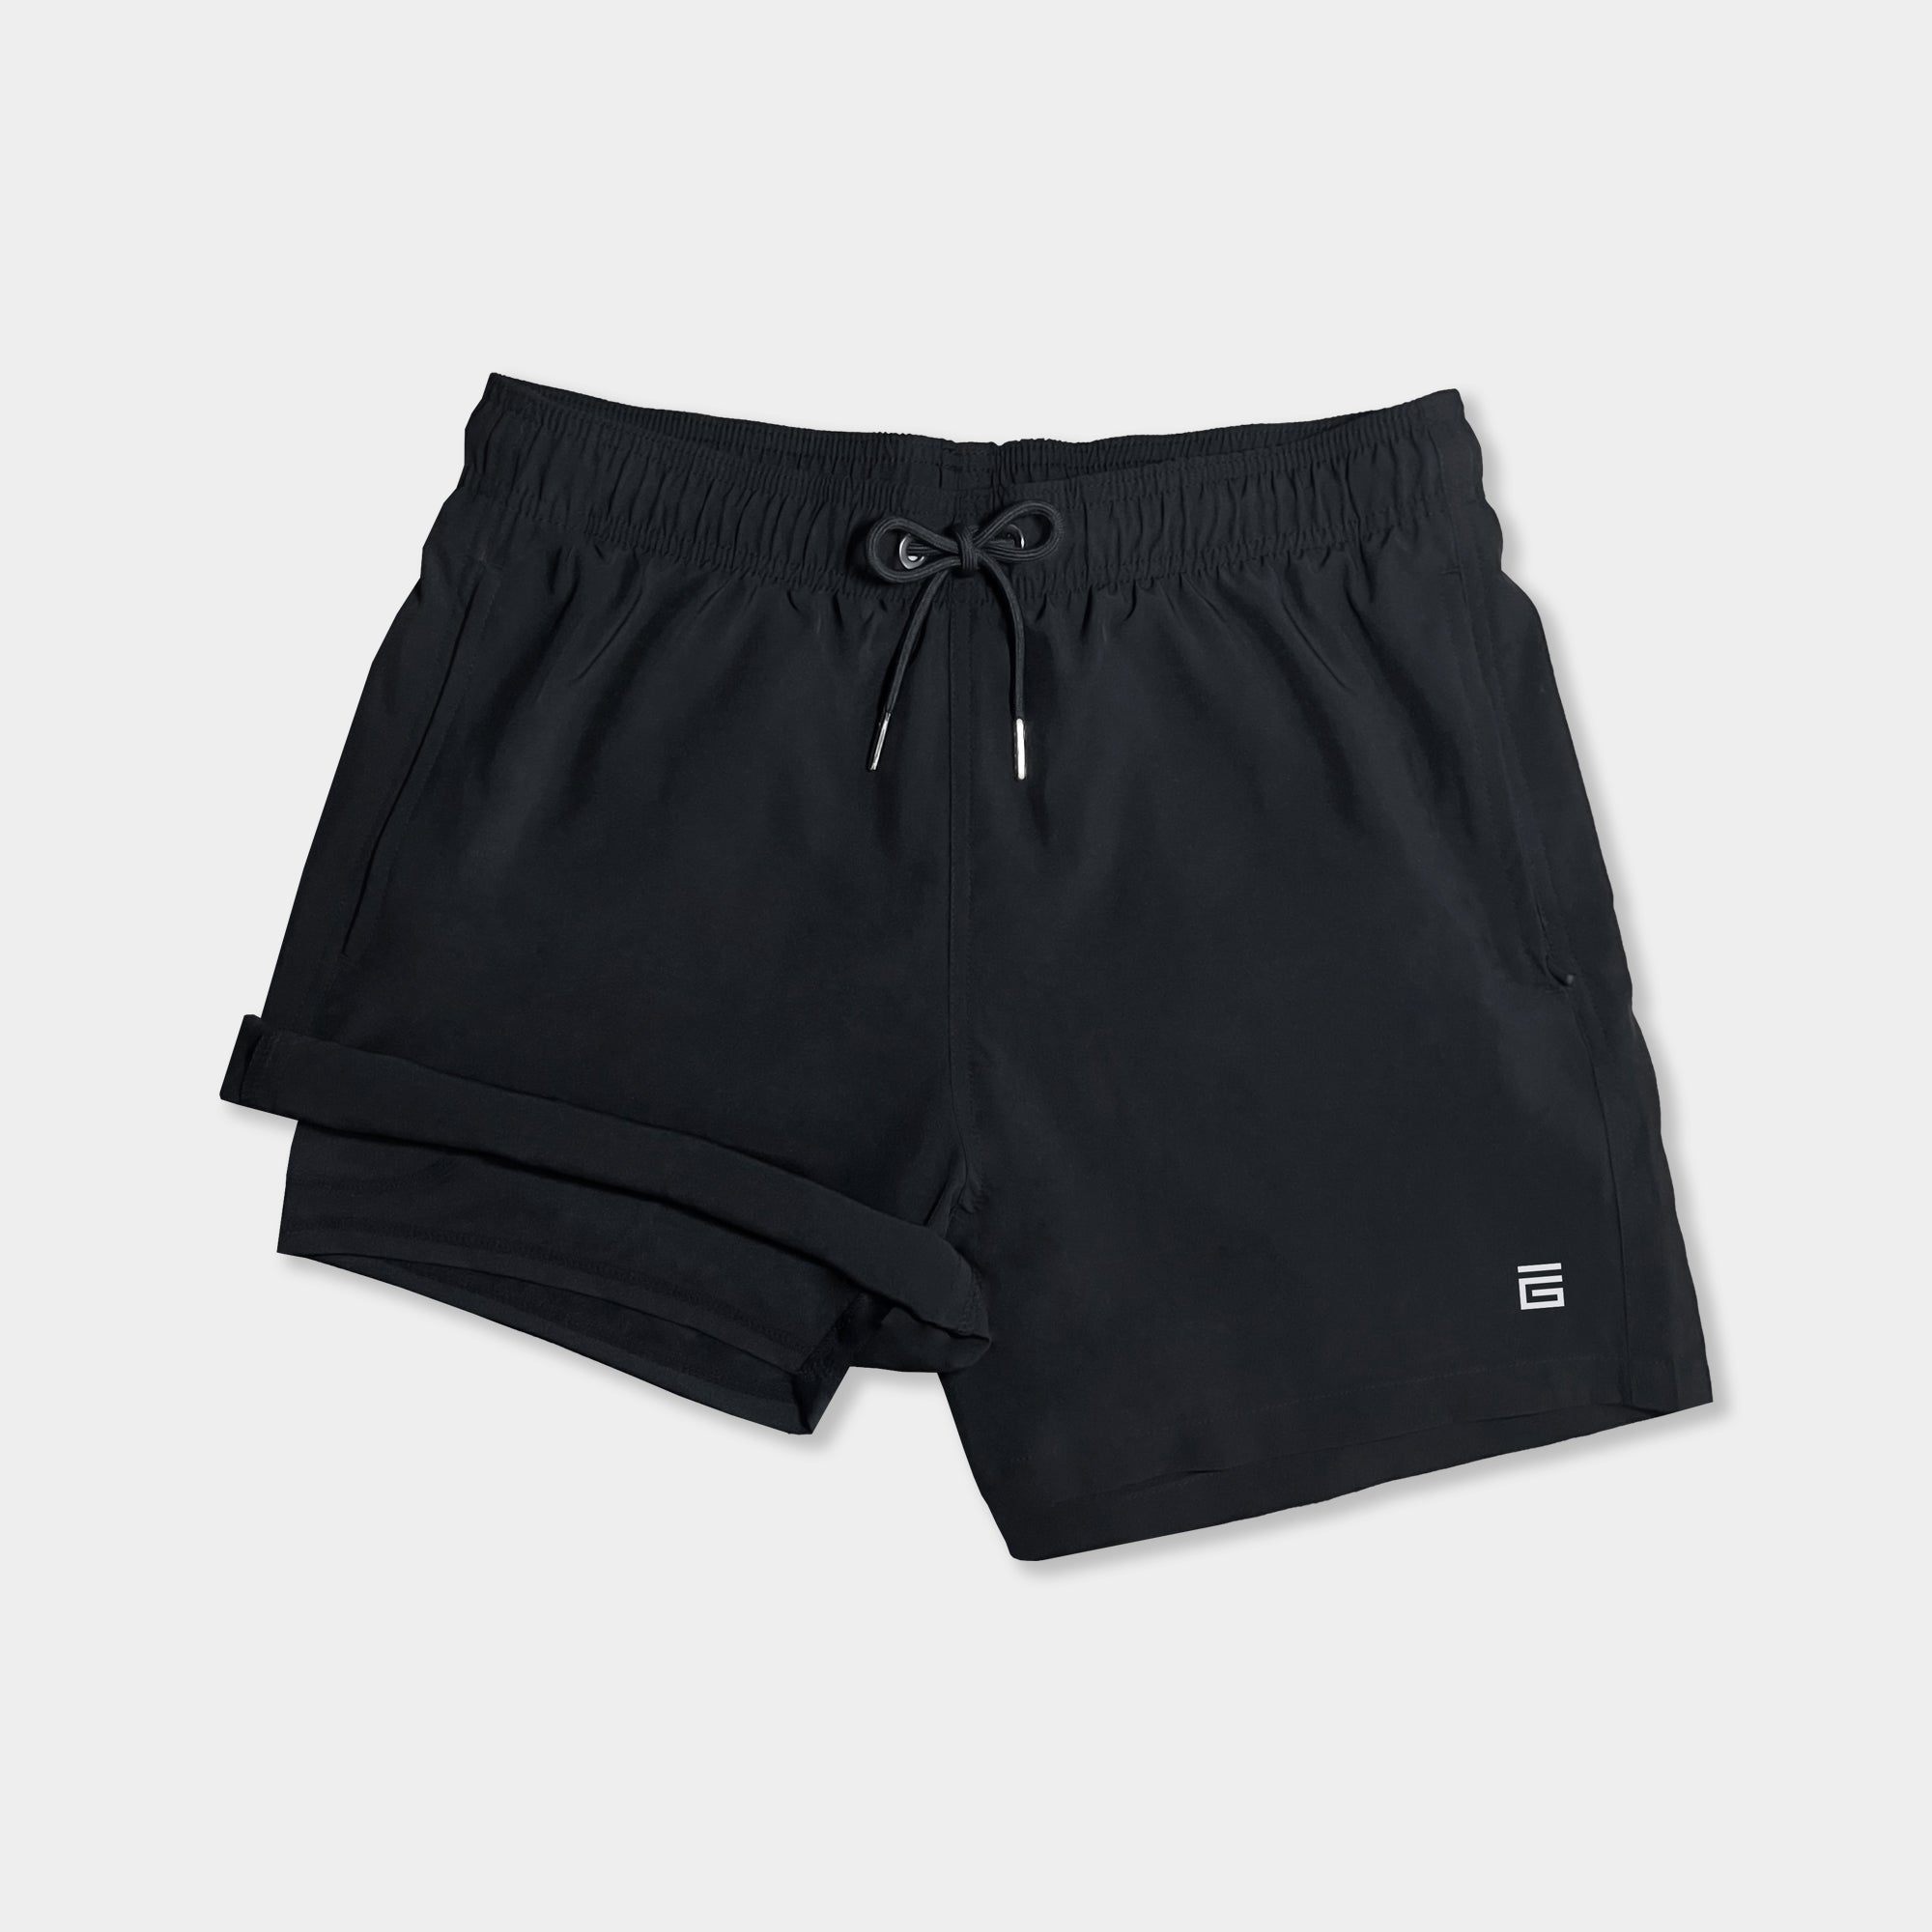 PEASKJP Men's Briefs Underwear Quick Dry Briefs Active Sports Soft  Breathable Underwear,Black M